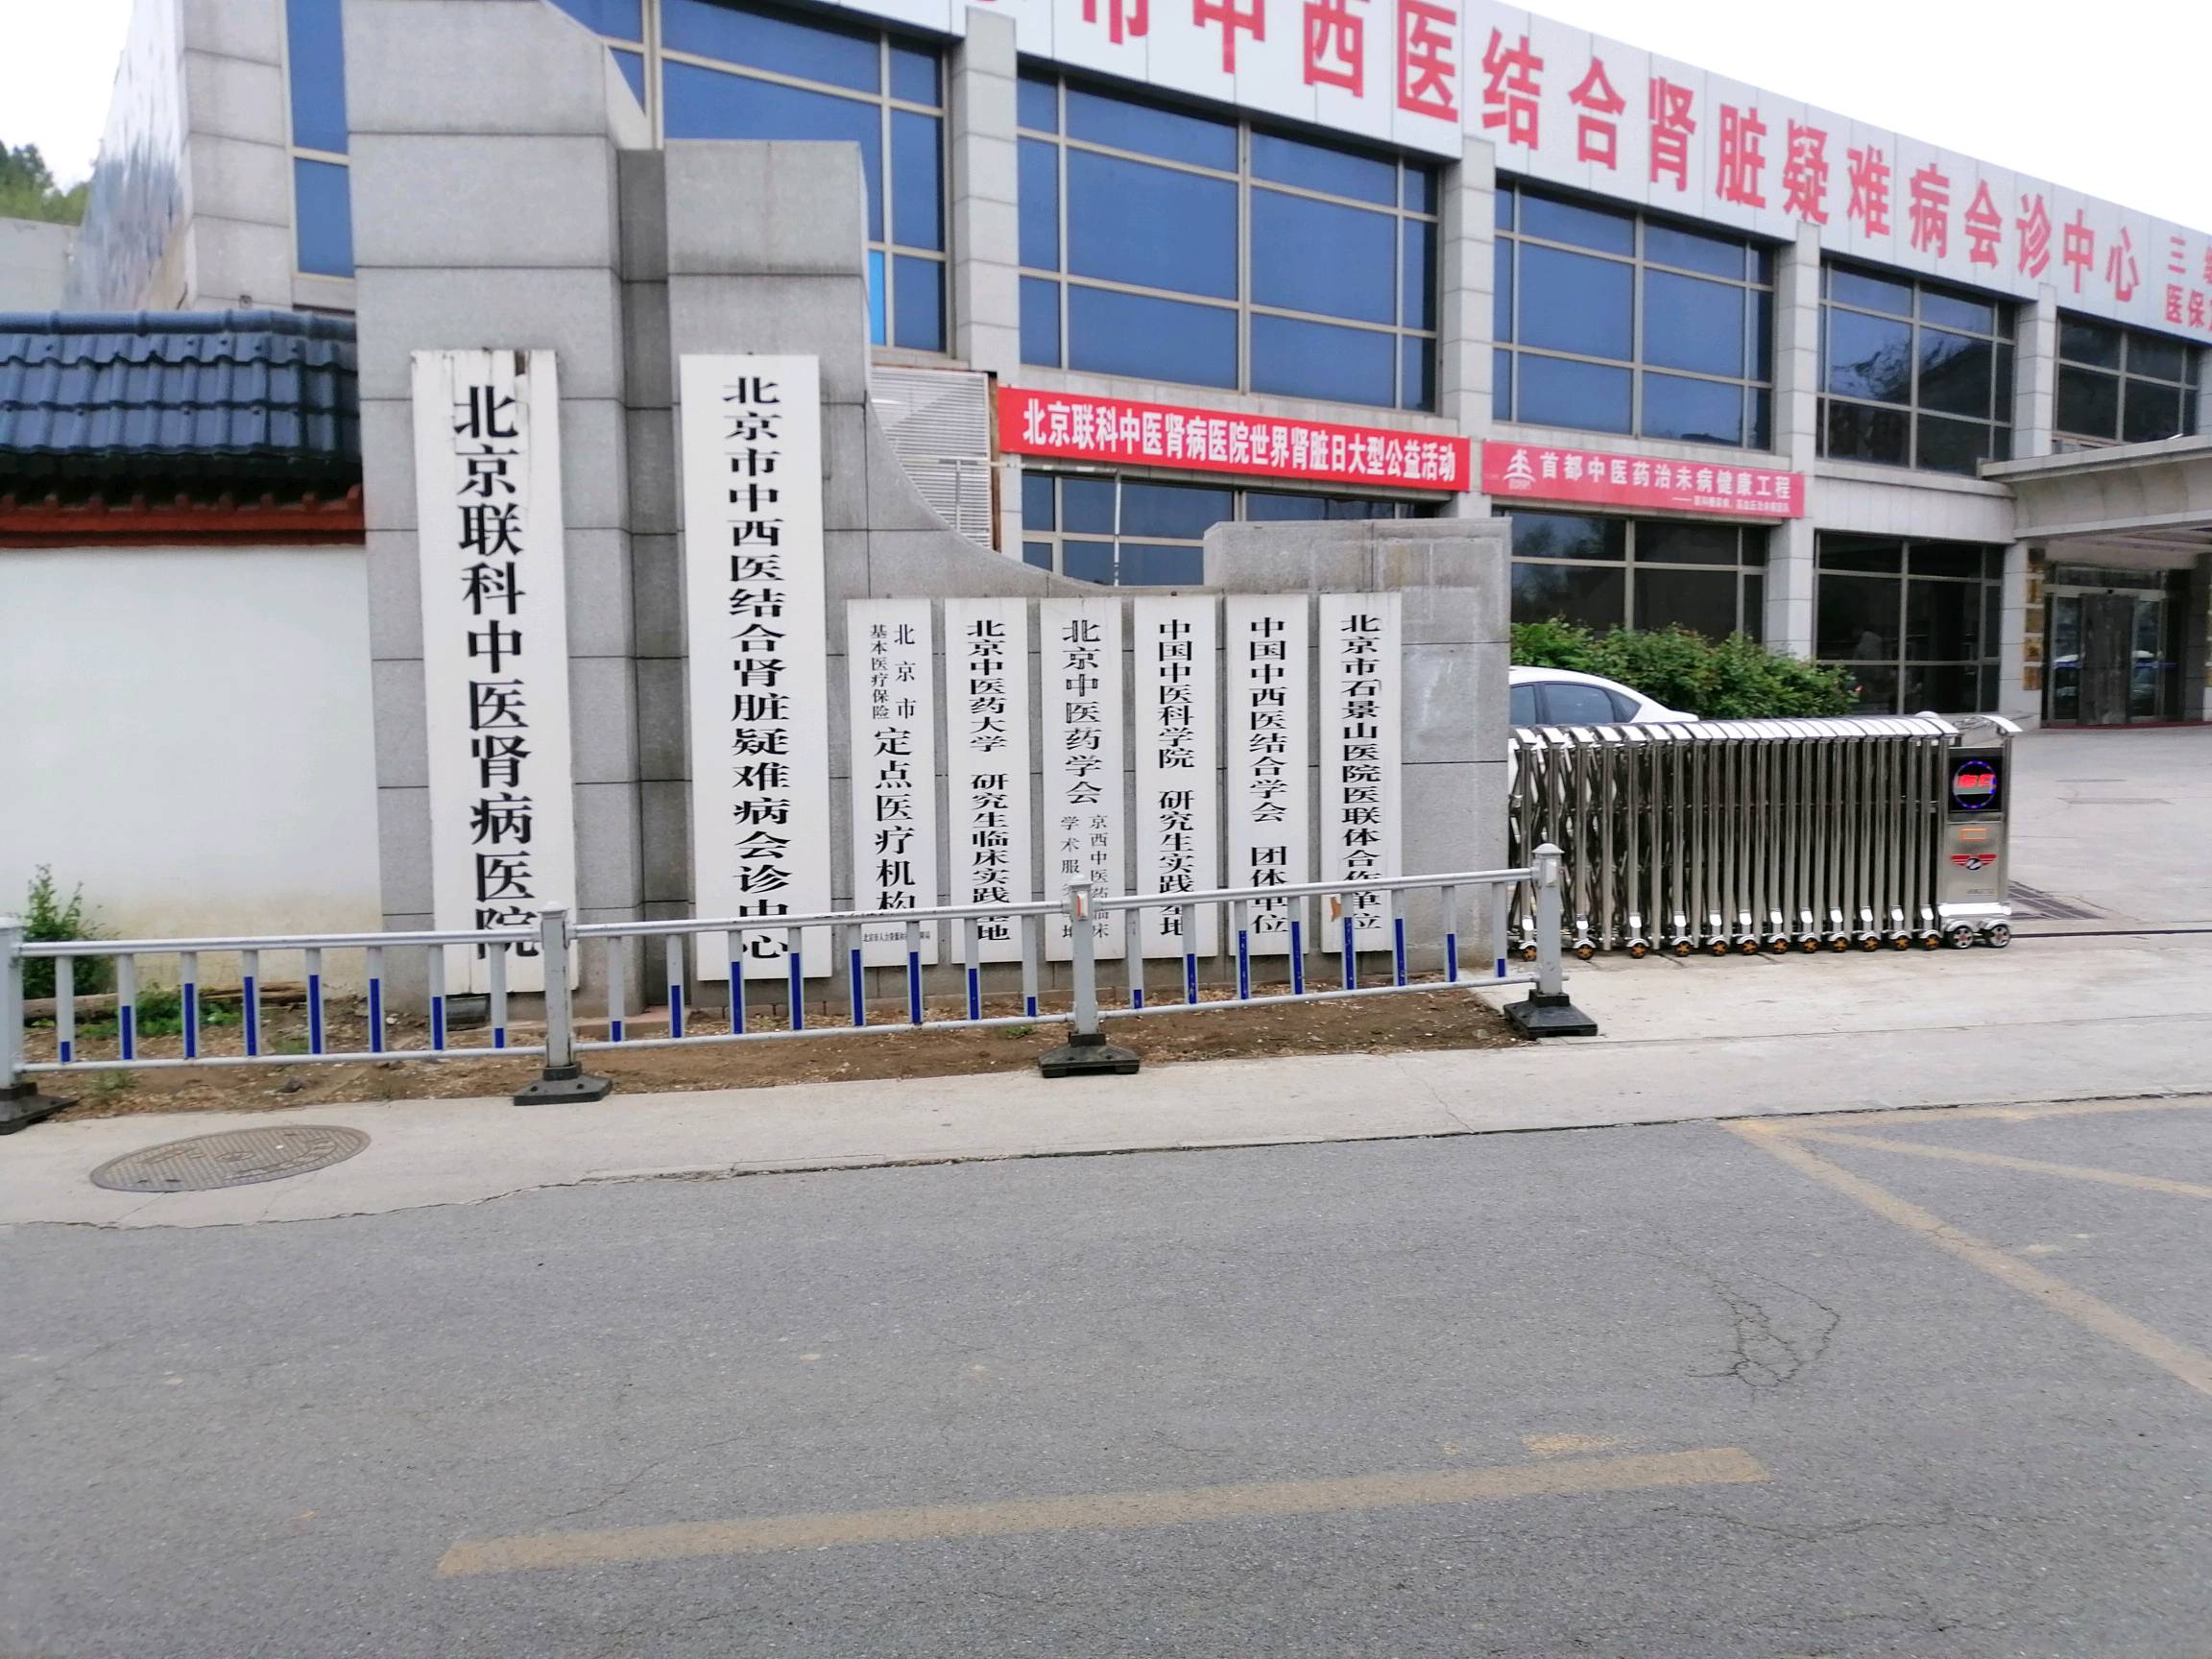 关于北京中医医院全天在门口随时联系的信息